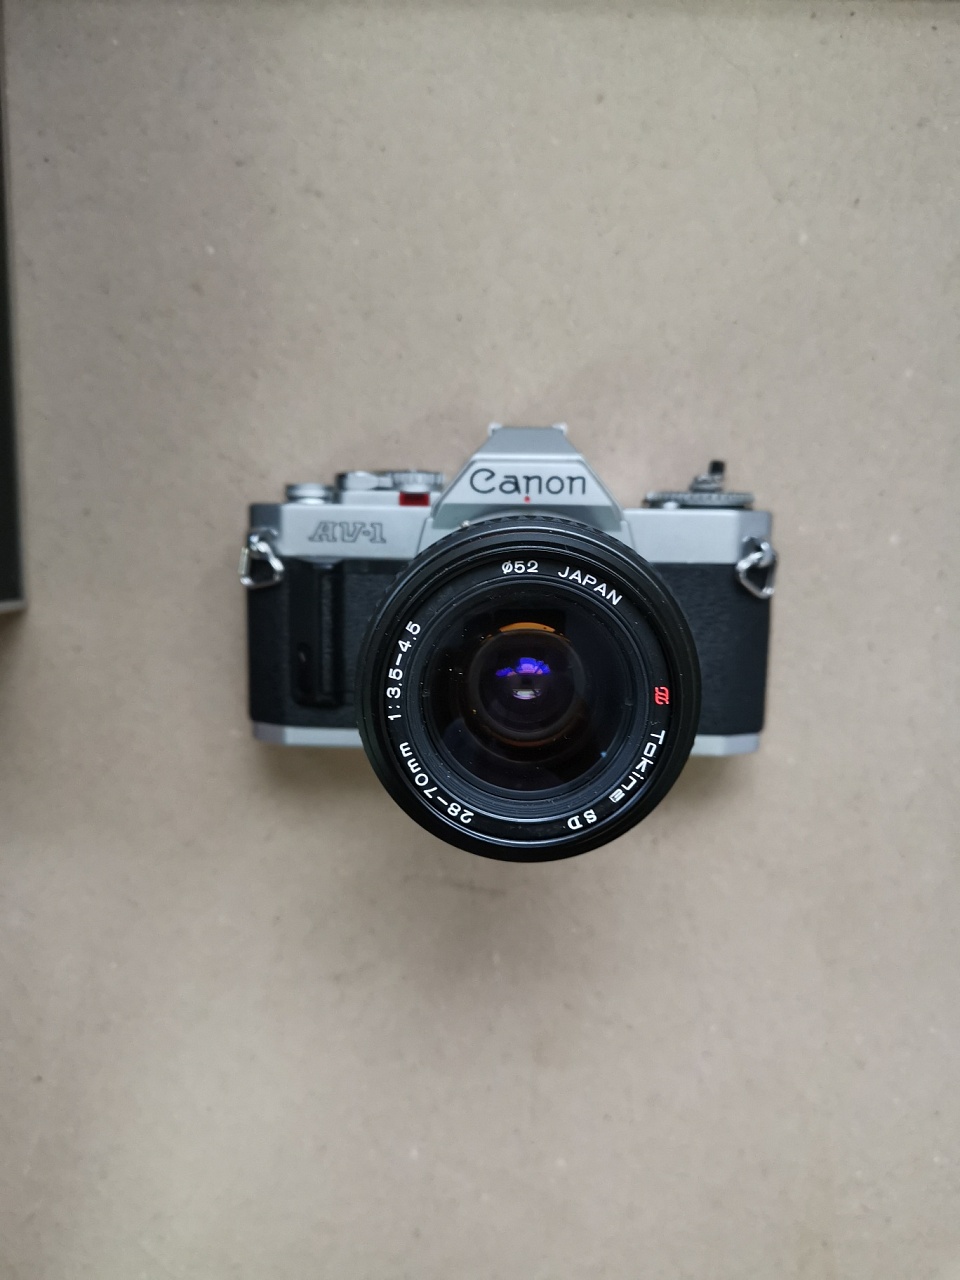 Canon AV-1 + Tokina 28-70 1:3.5 - 4.5 фото №1